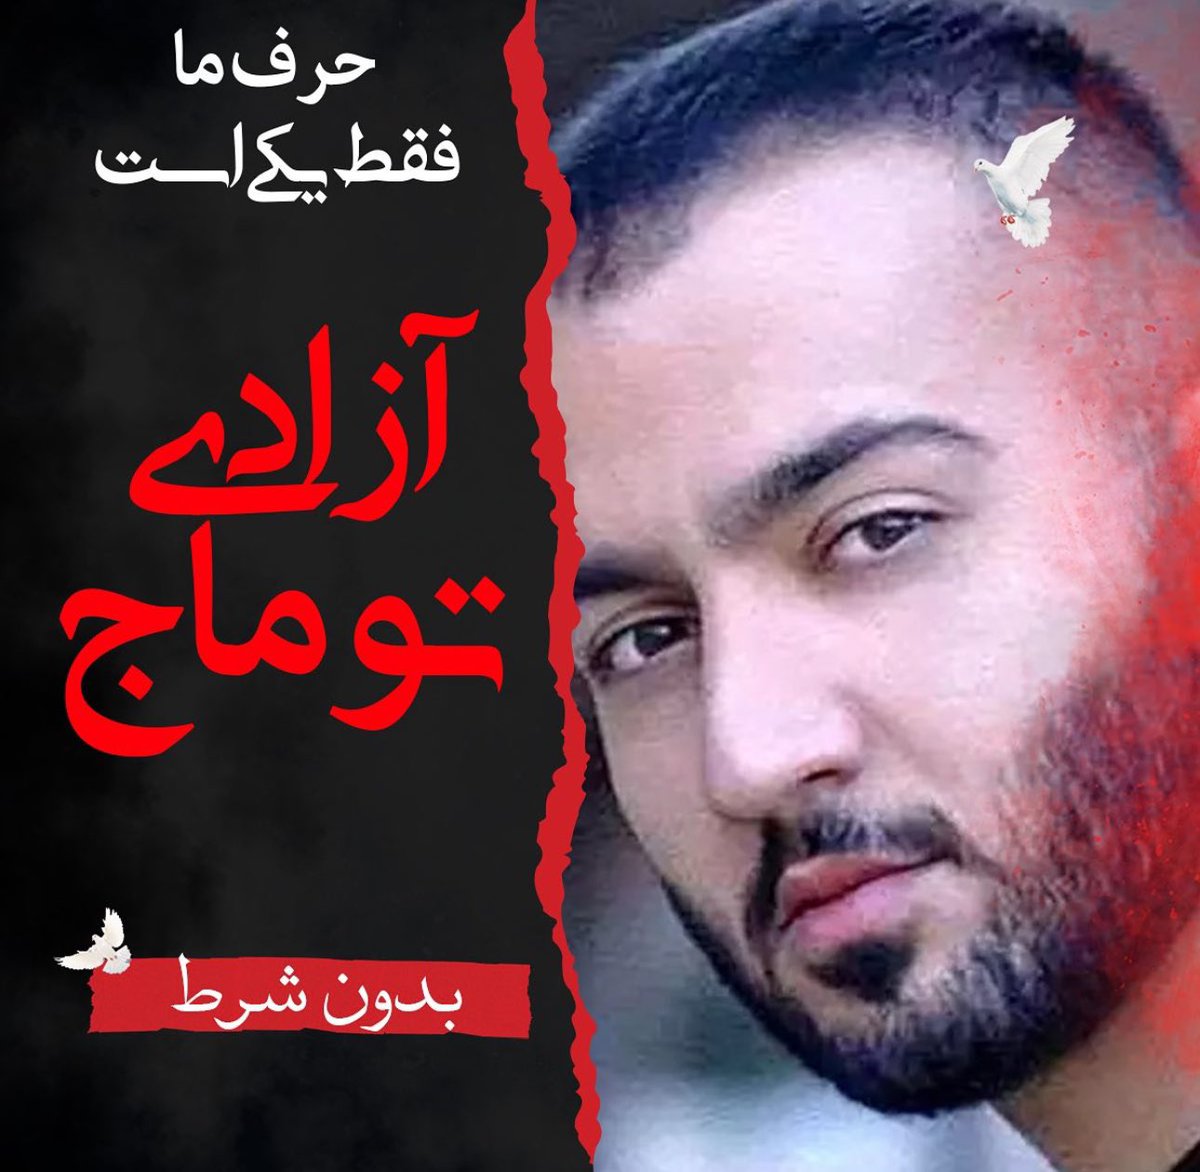 @vahshate_shomam حکم اعدام توماج حکم اعدام همه ی ماست.
به خیابان باز میگردیم ....
#توماج_صالحی 
#FreeToomaj